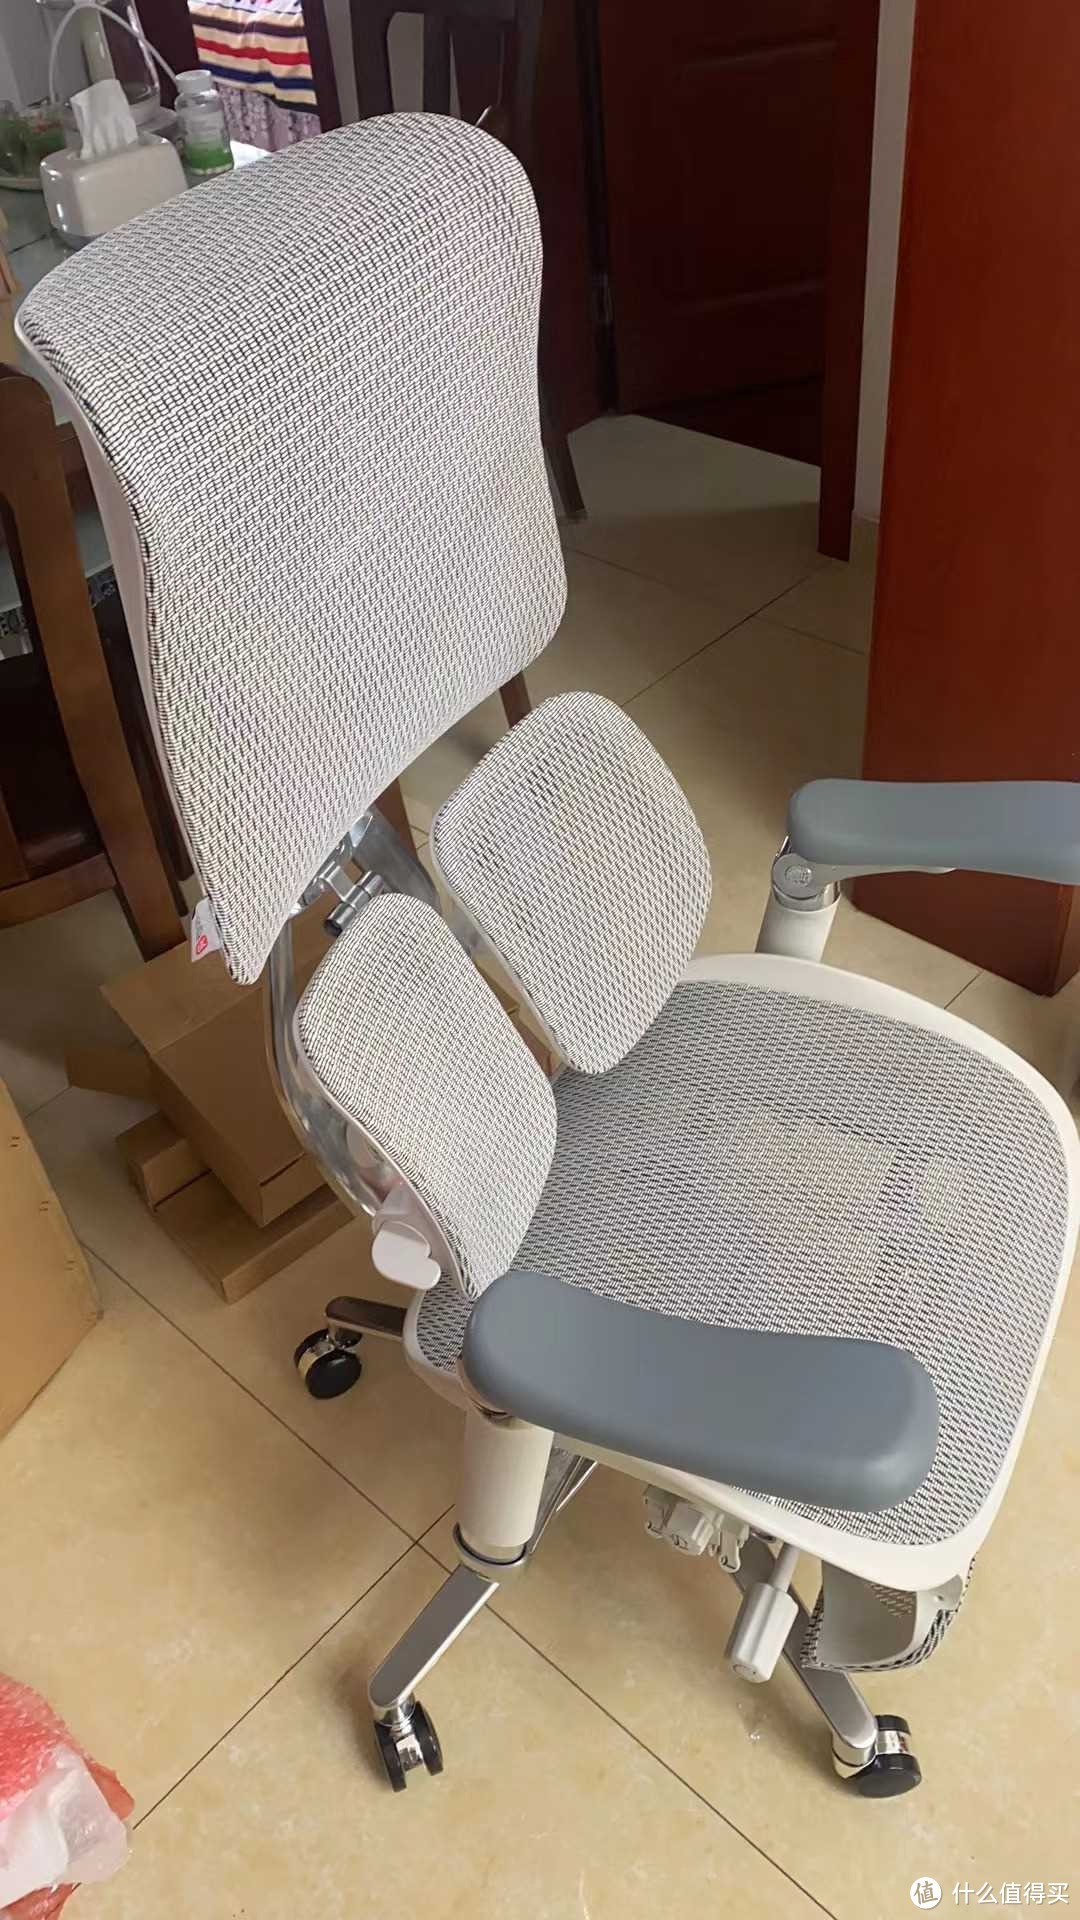 西昊人体工学椅是一款以人体工程学为基础的设计概念而开发的办公椅。